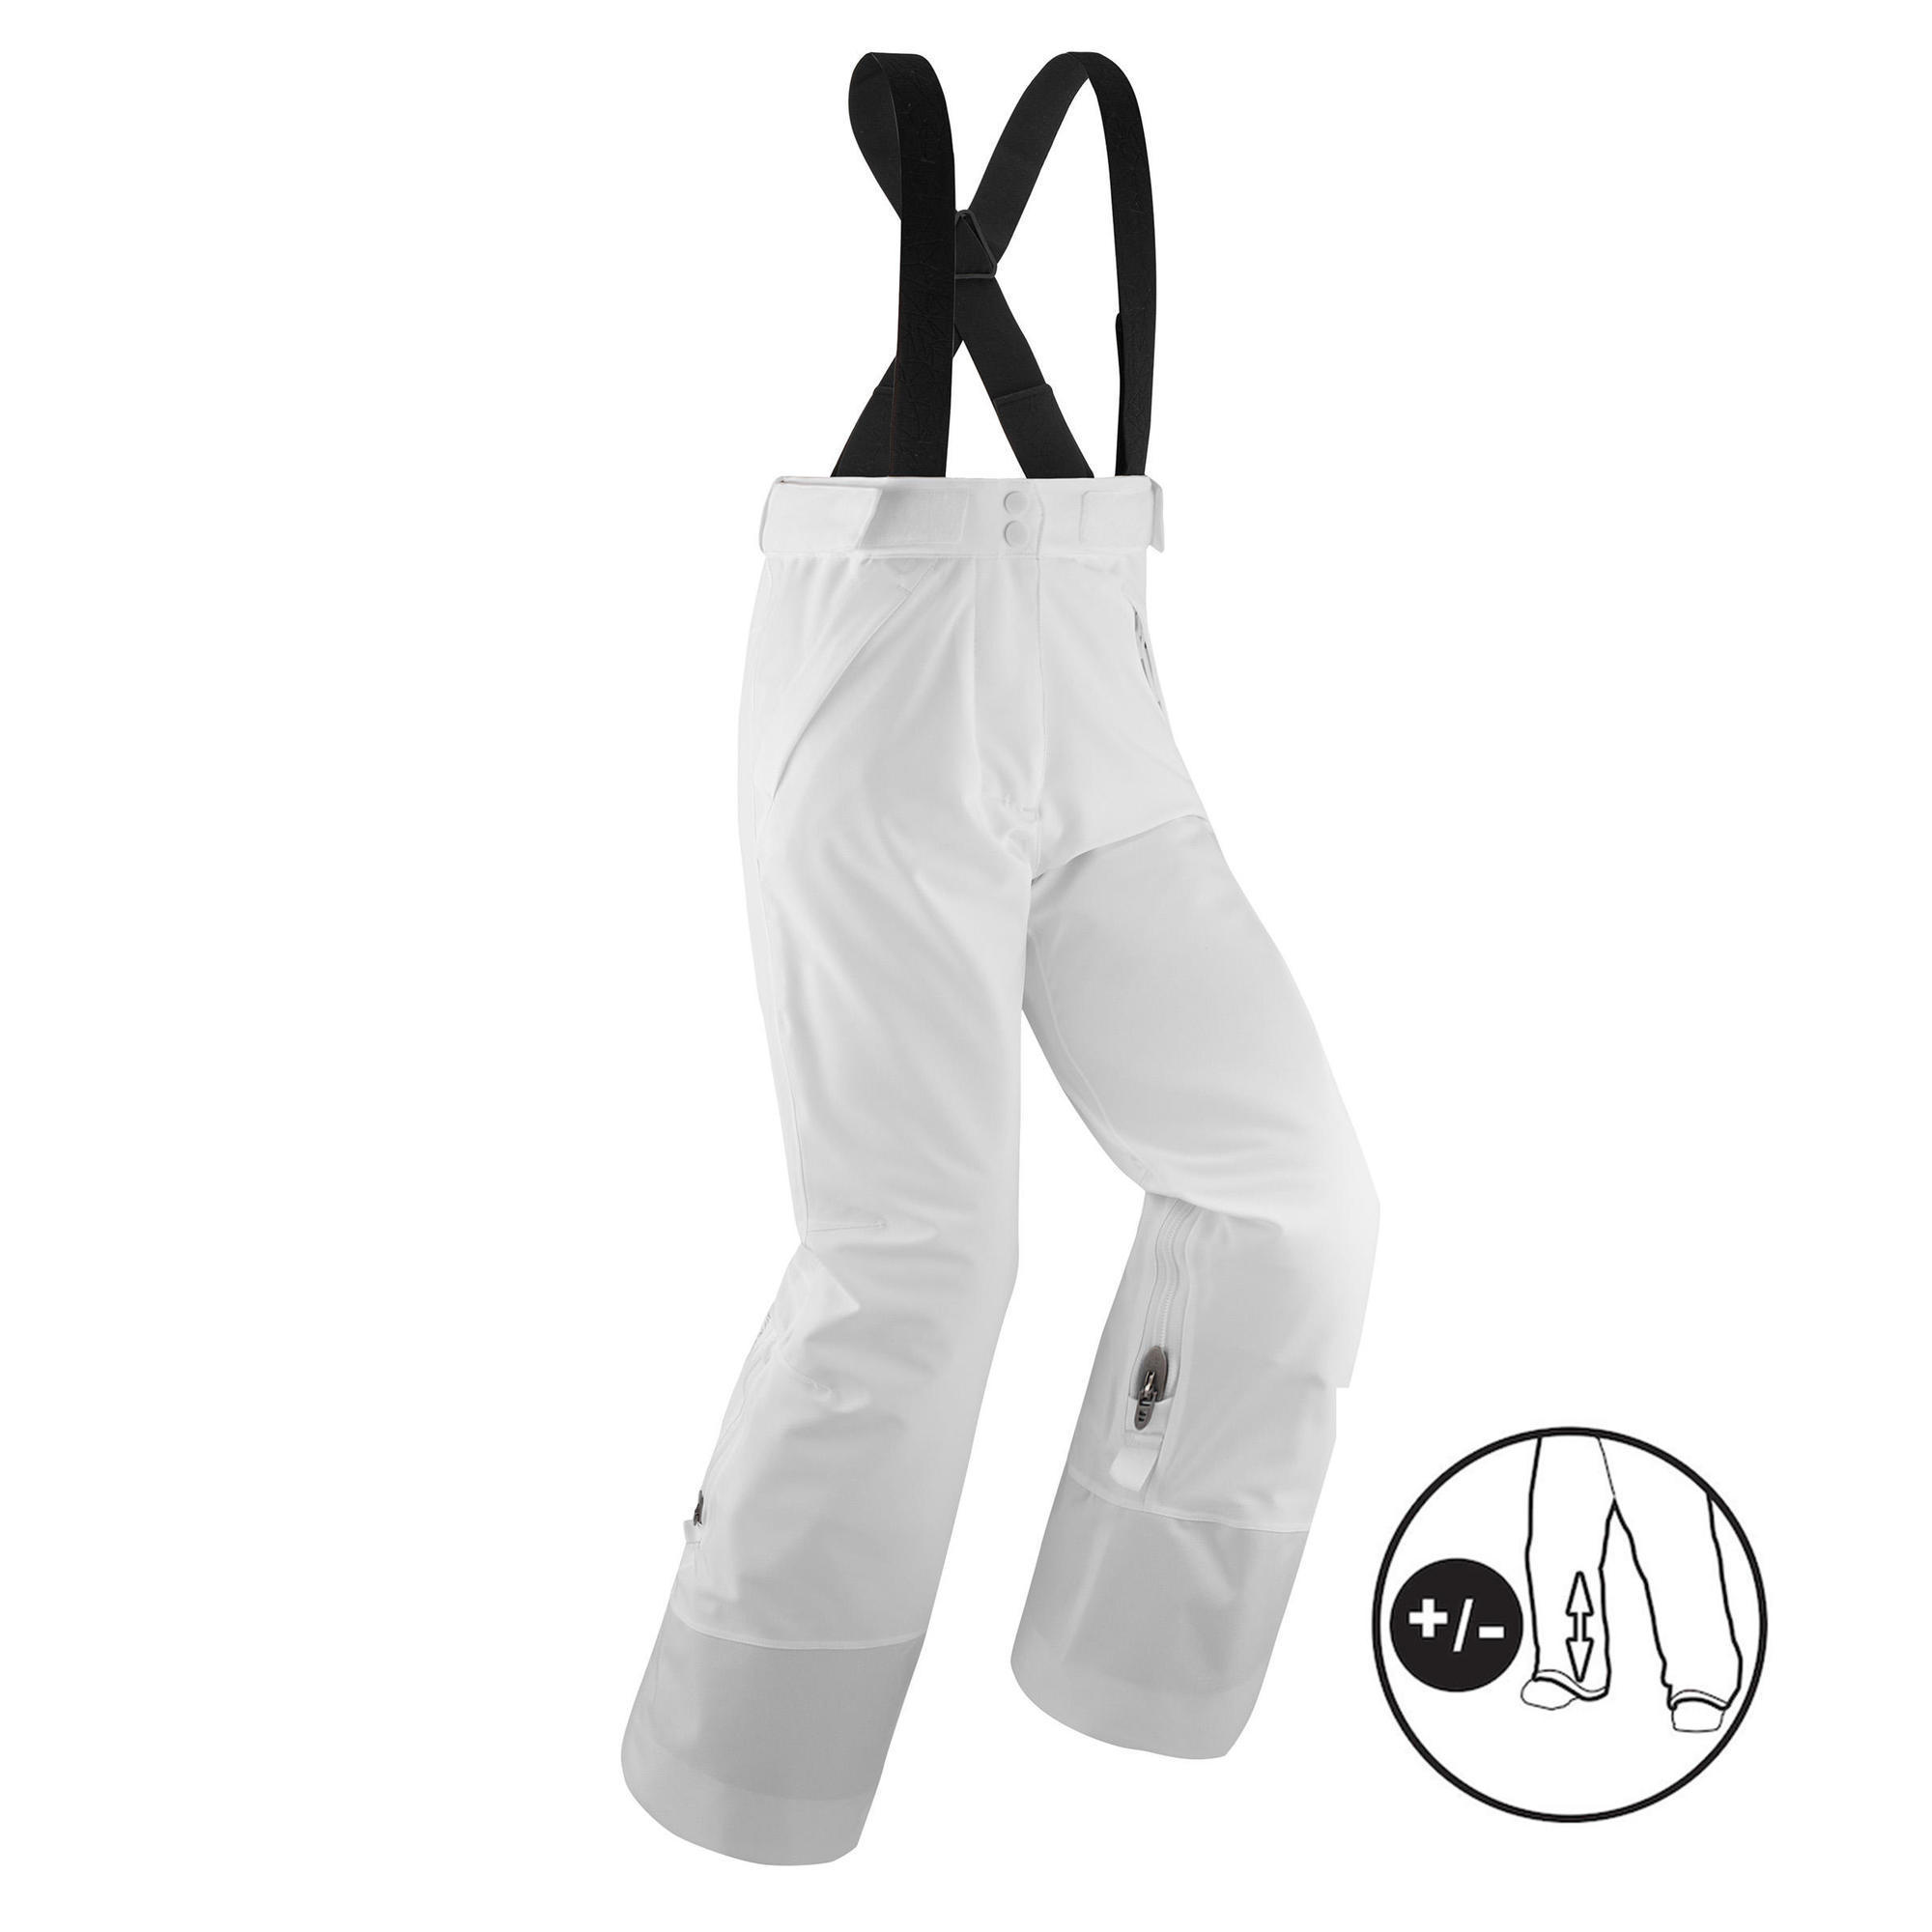 Quechua Decathlon Black Ski Snowboard Pants Sz 30 US 44 EU Boys L Women's 8  NWOT | eBay